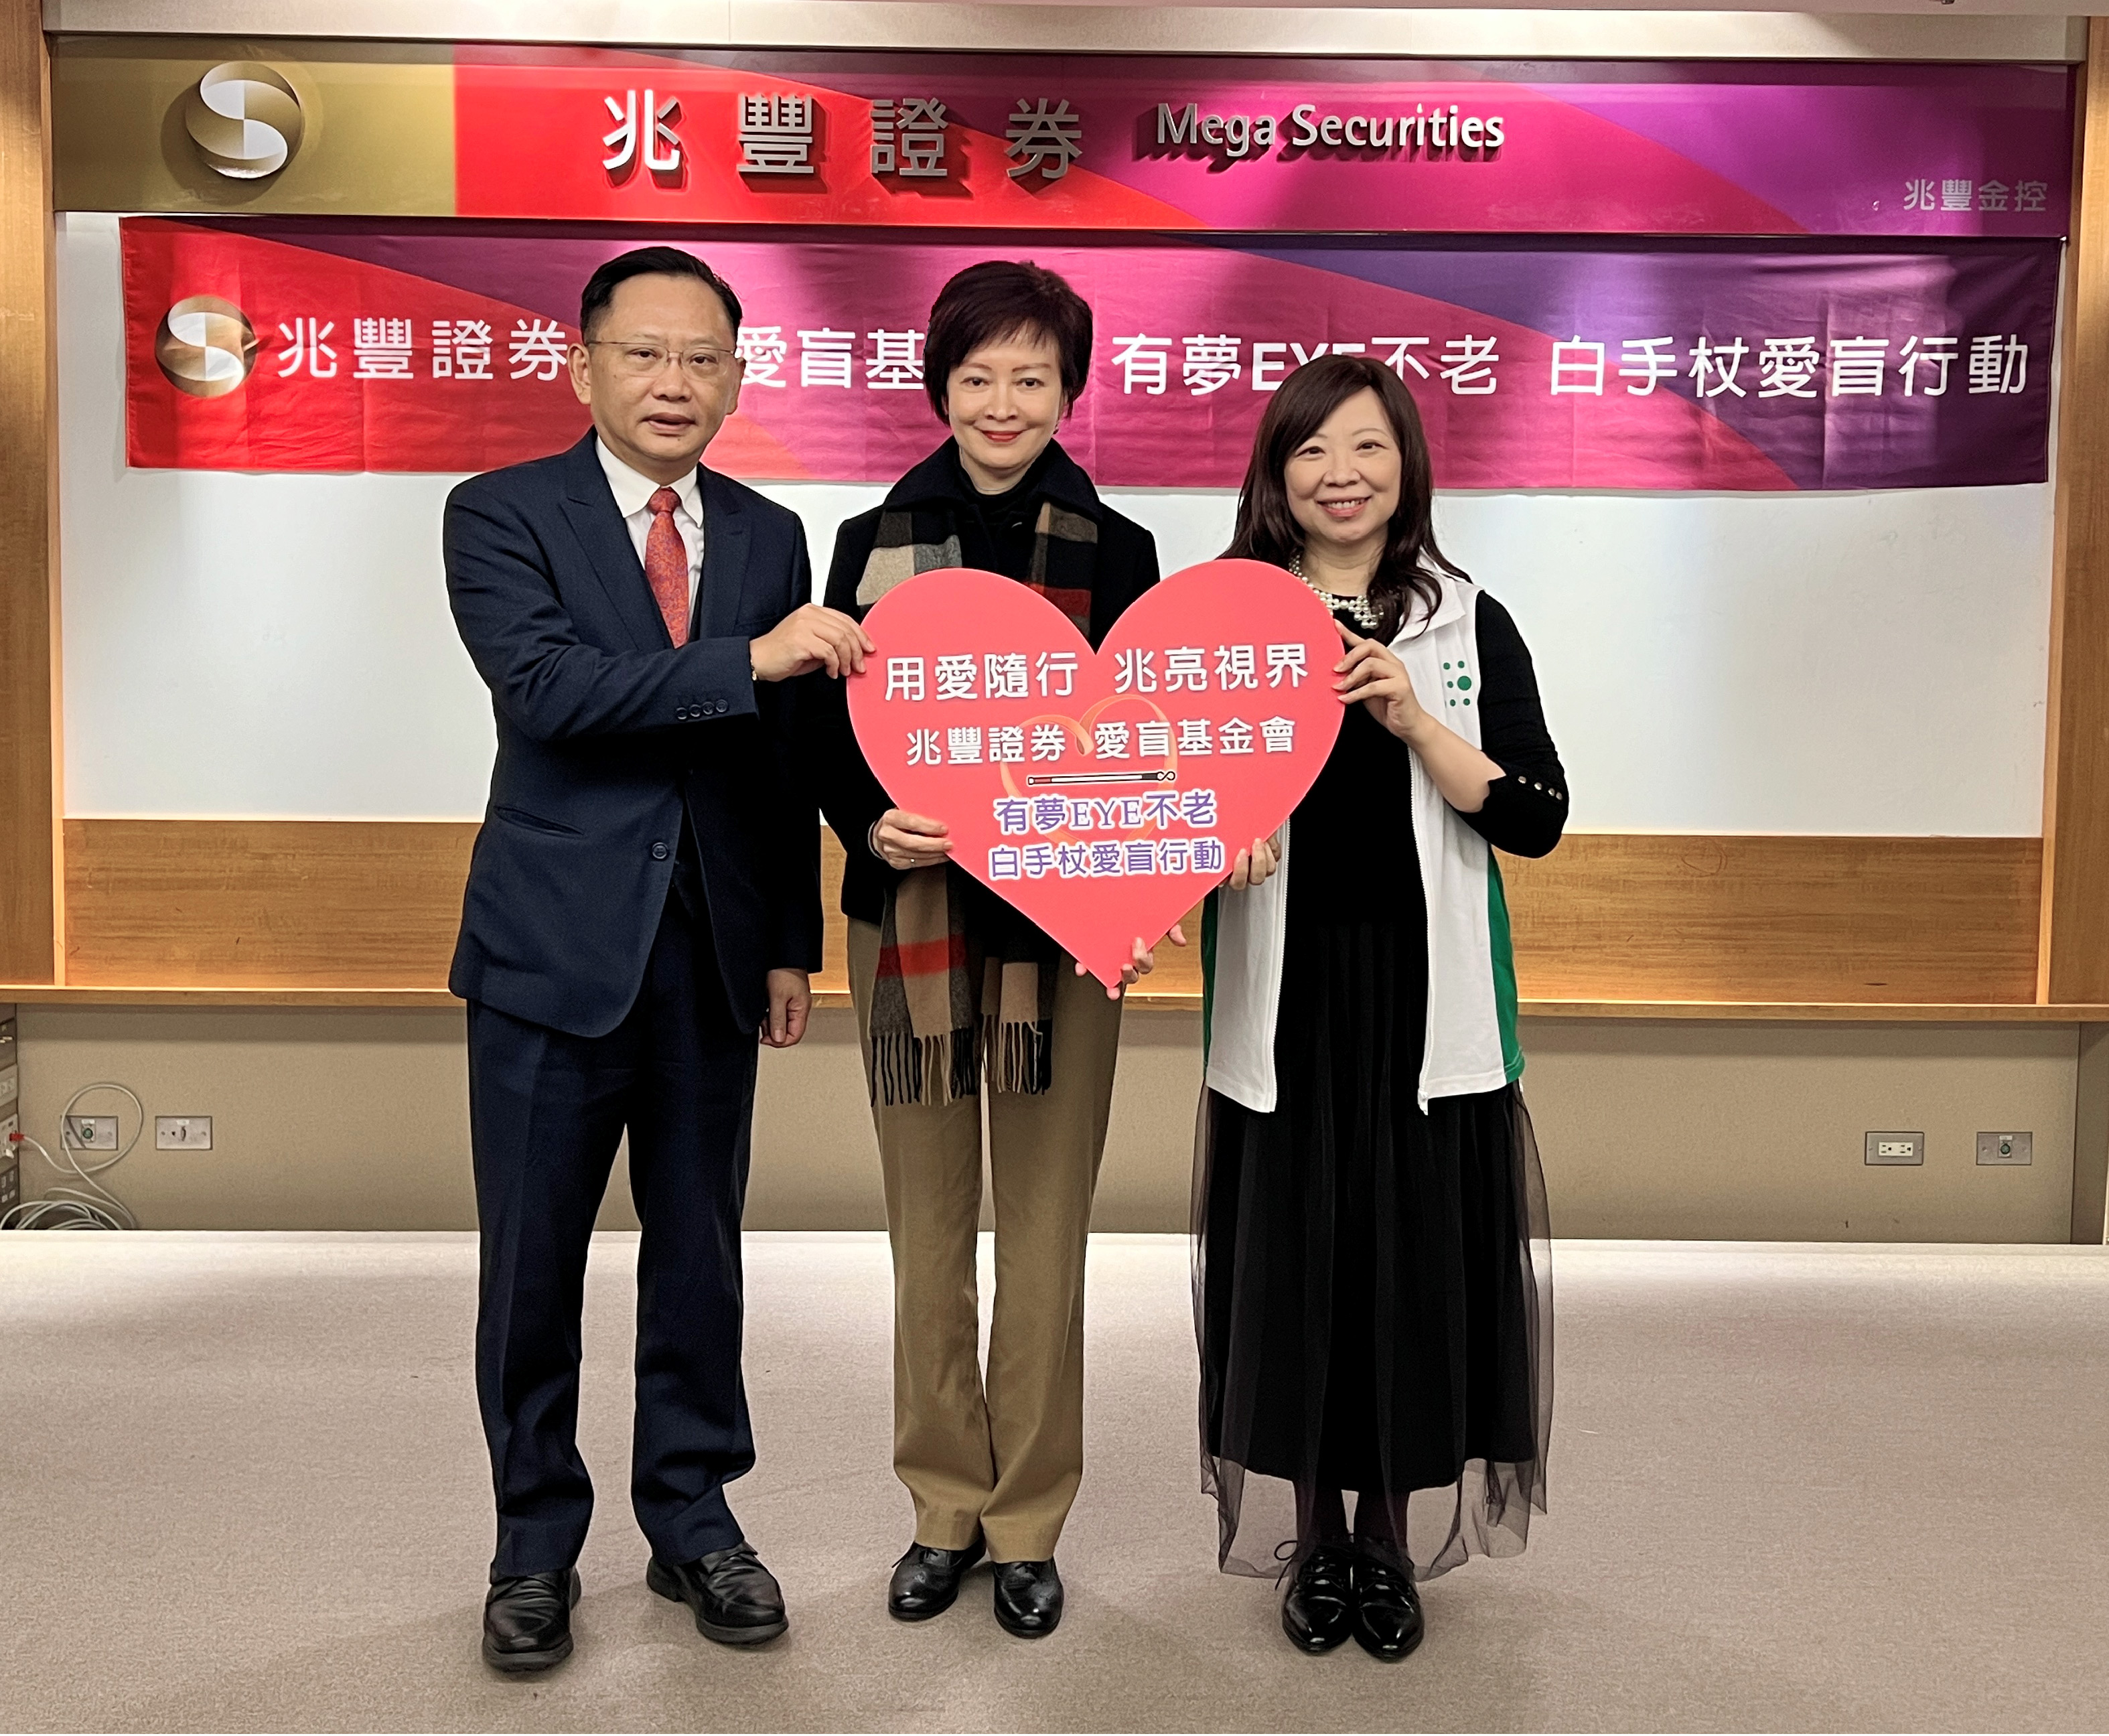 兆豐證券董事長陳佩君女士(中)與總經理吳明宗先生(左)與愛盲基金會劉怡君執行長合影。